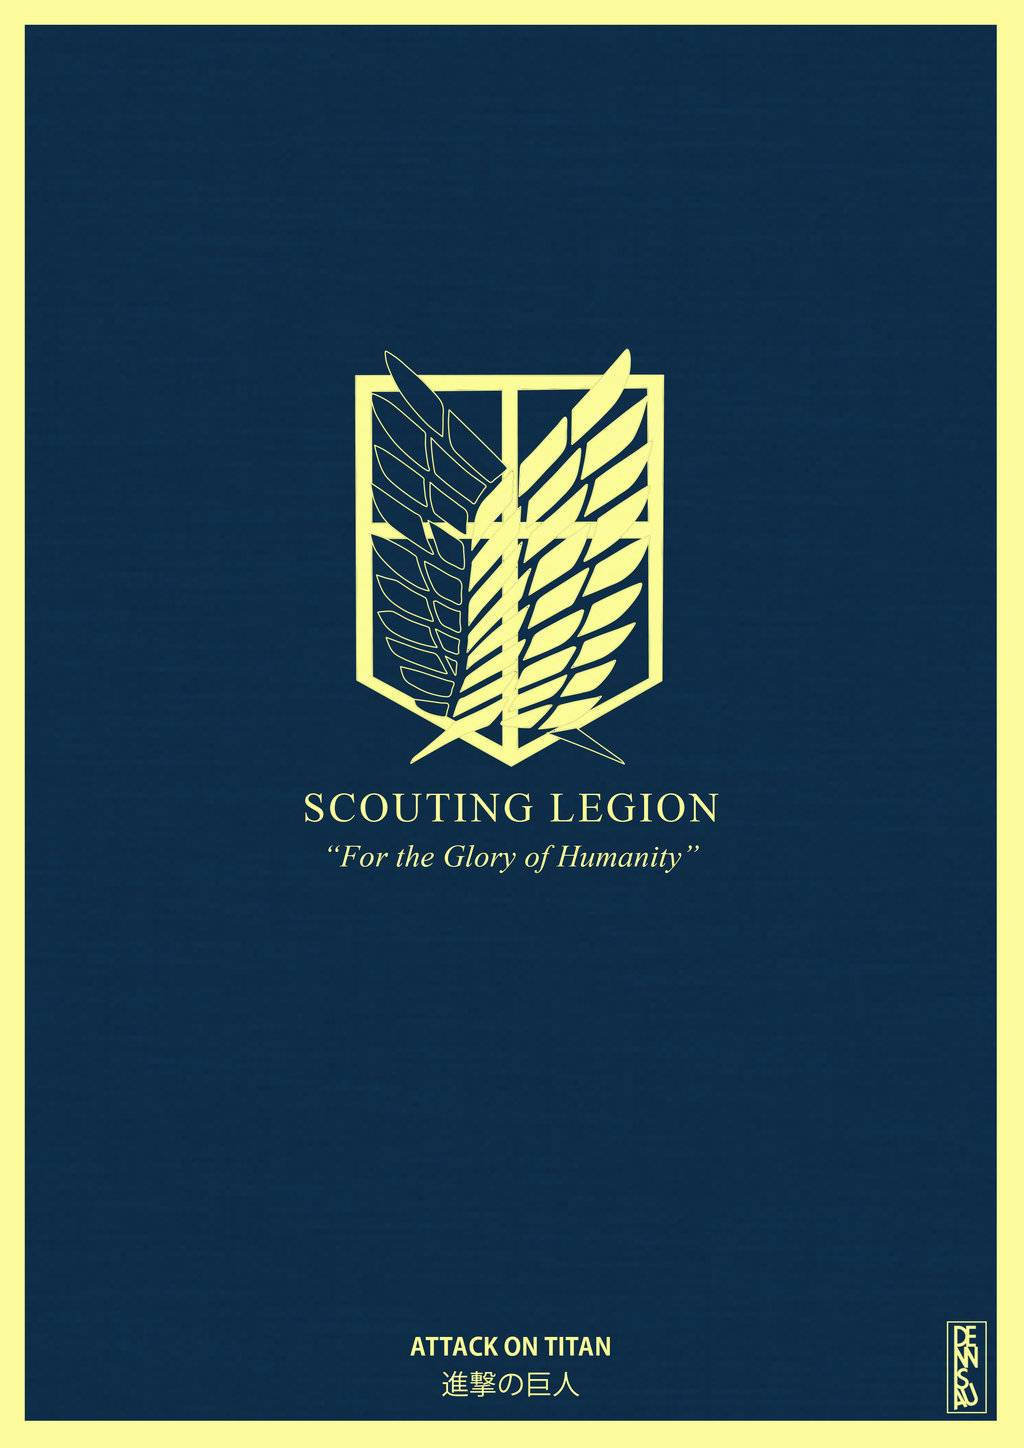 Logode La Legión De Exploración De Ataque A Los Titanes En Iphone. Fondo de pantalla